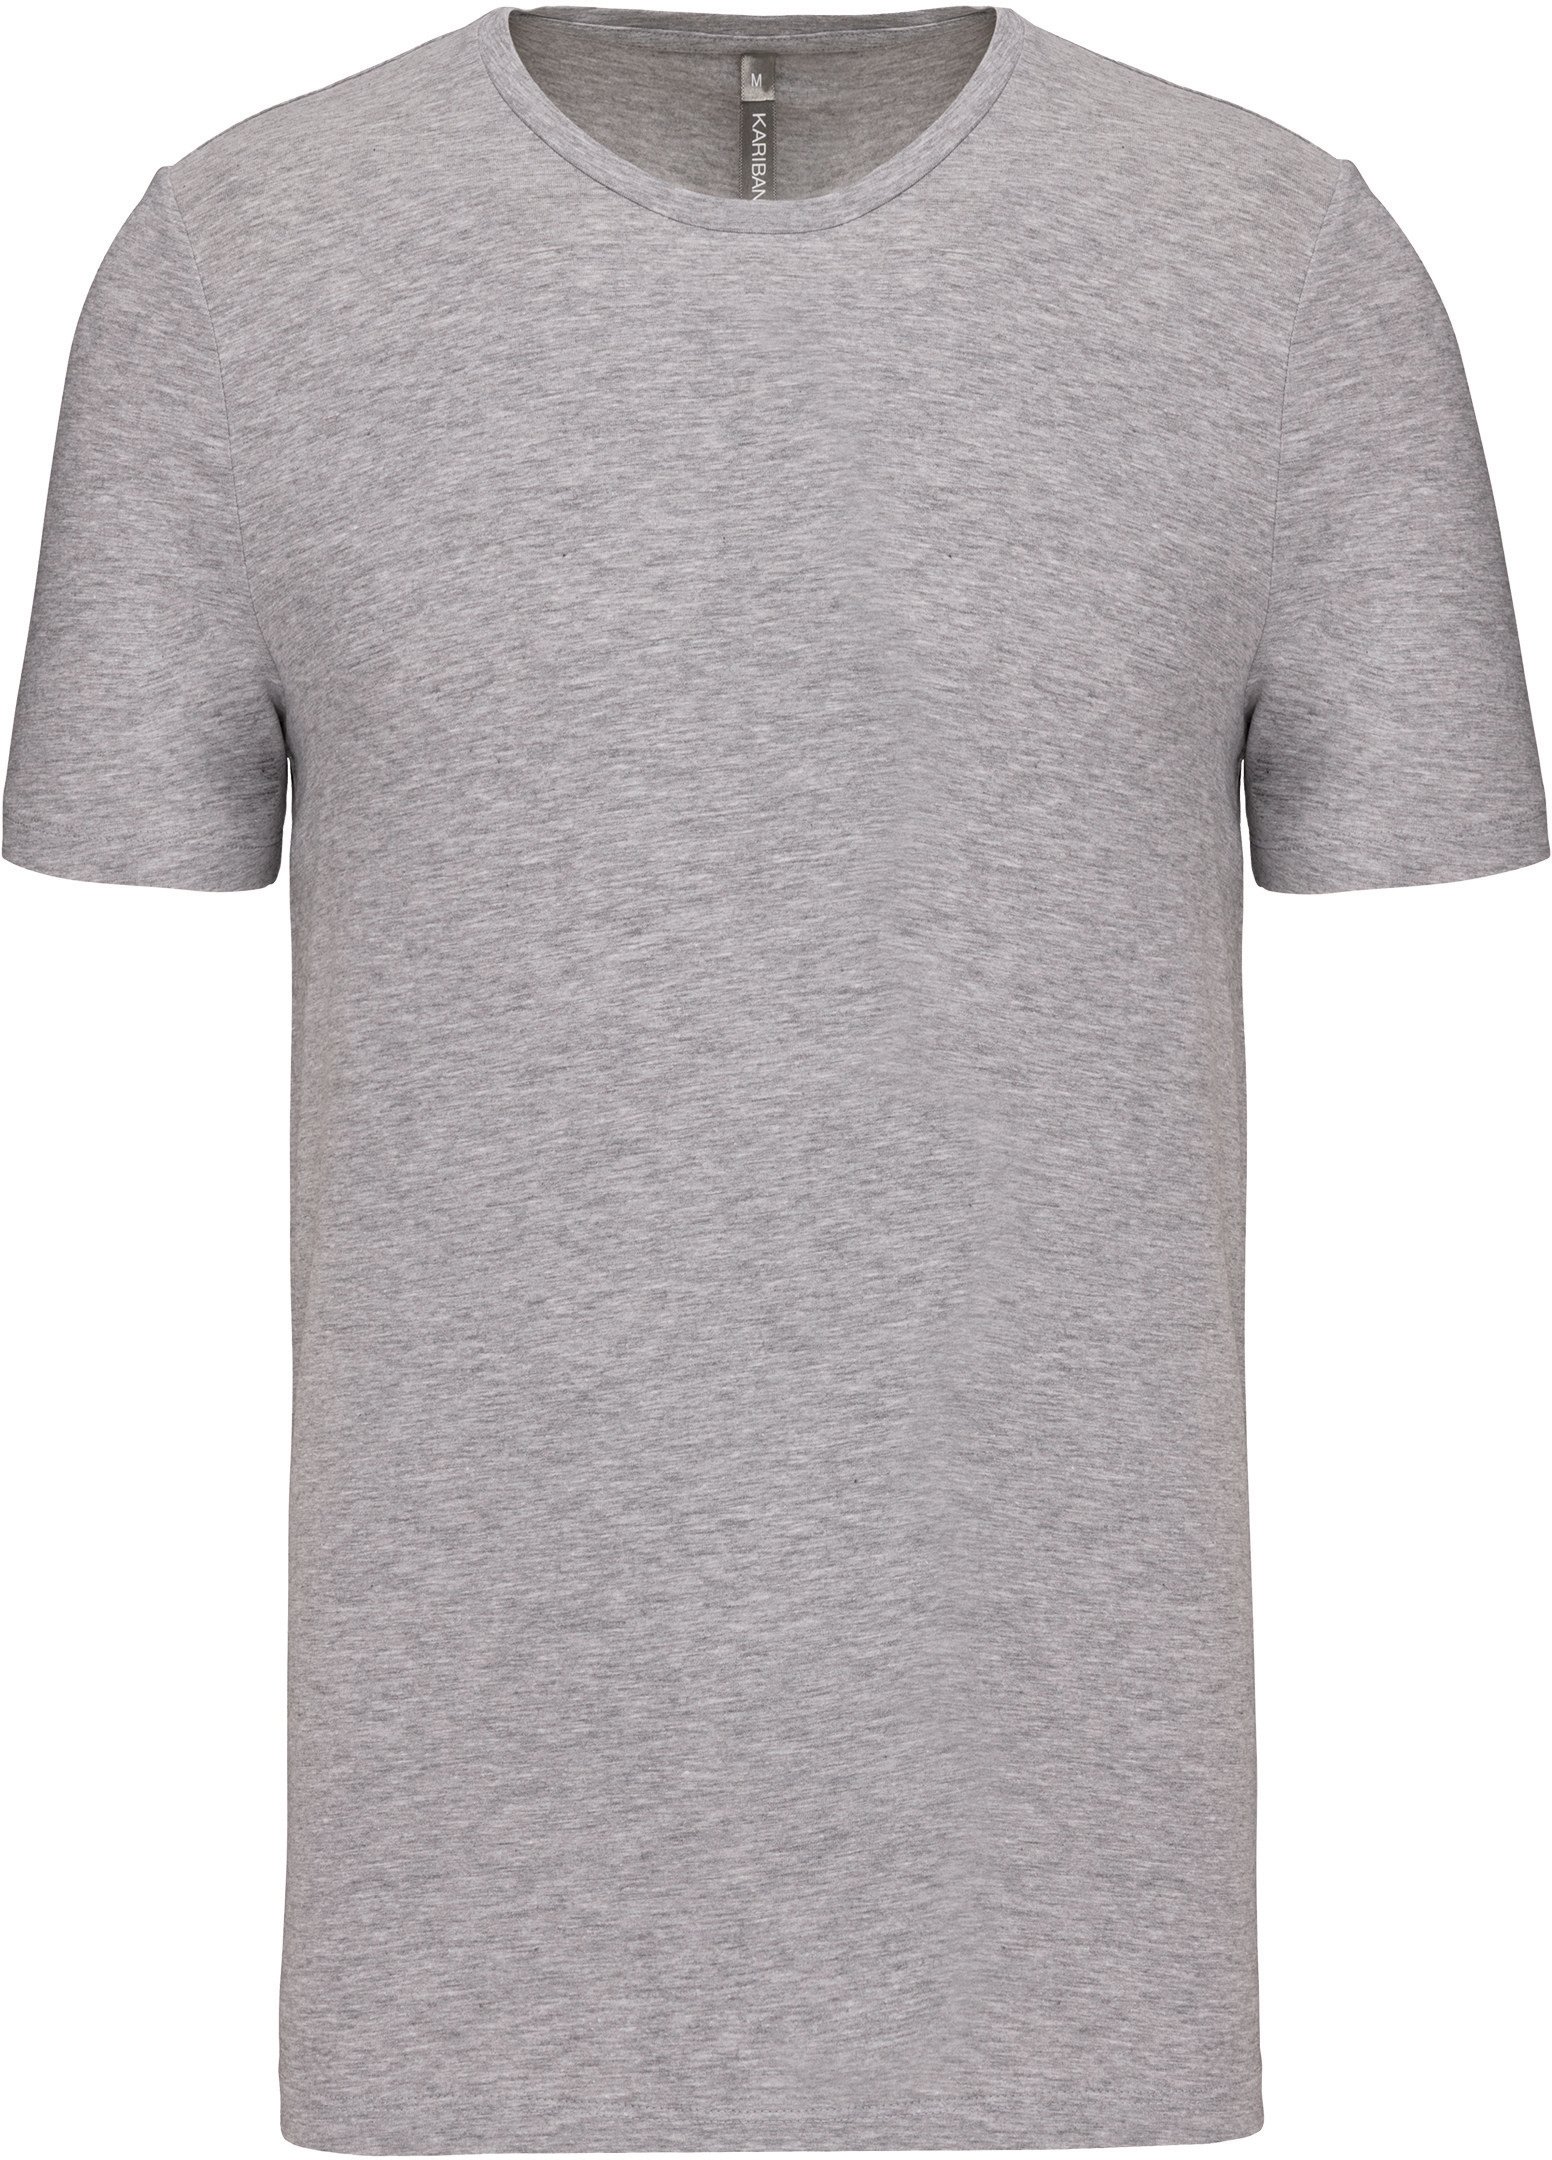 Pánské elastické tričko Barva: Light Grey Heather, Velikost: 3XL